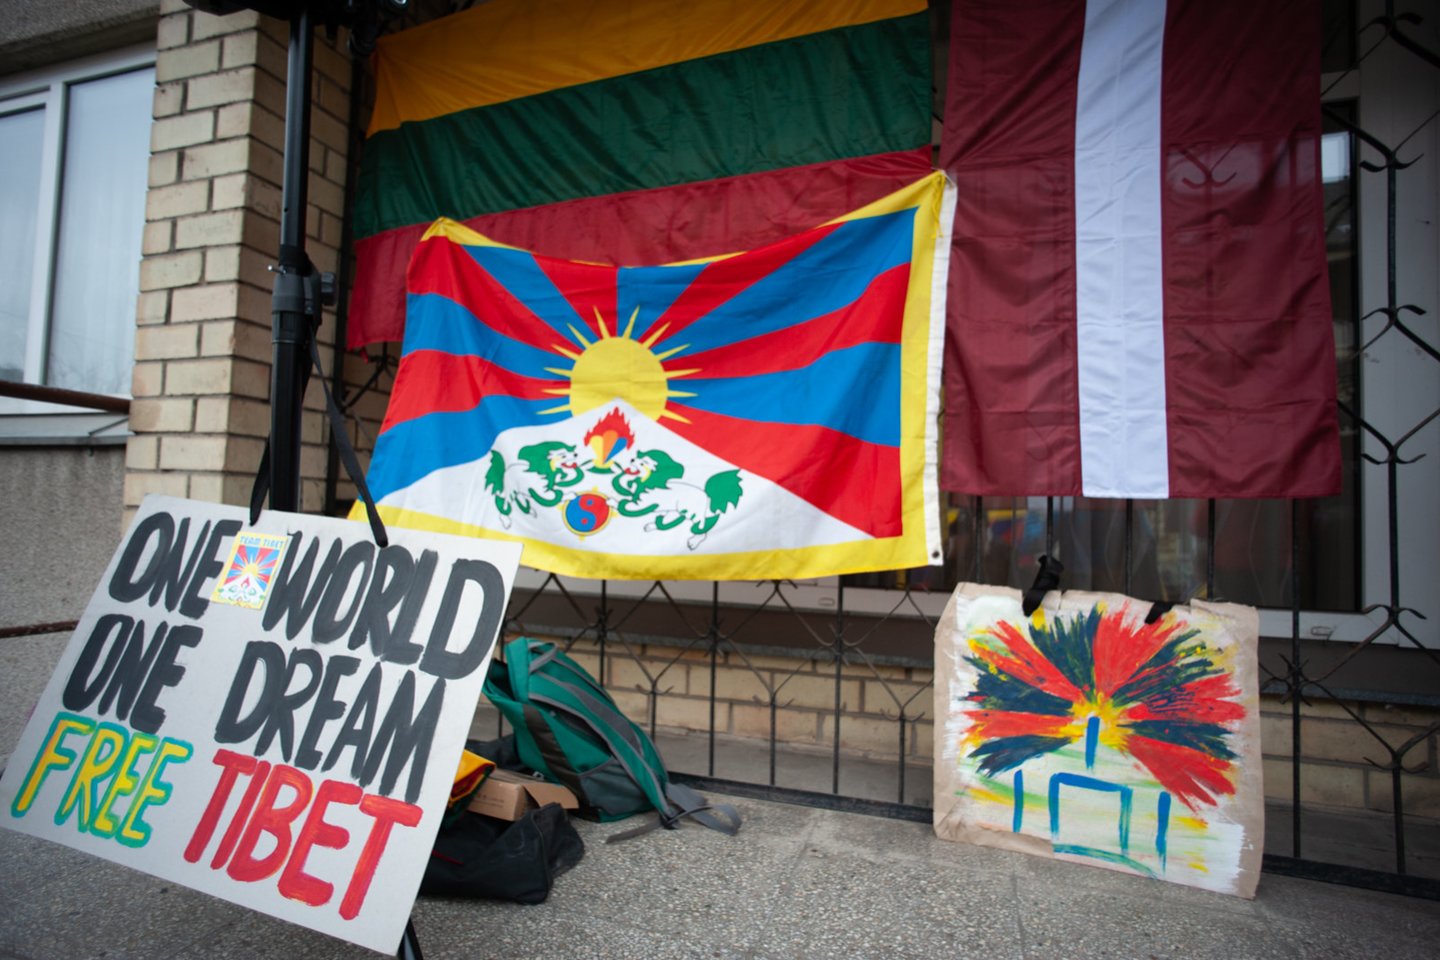  Lietuvoje prie Kinijos ambasados kelios dešimtys žmonių reiškė solidarumą Tibetui.<br> Organizatorių nuotr.